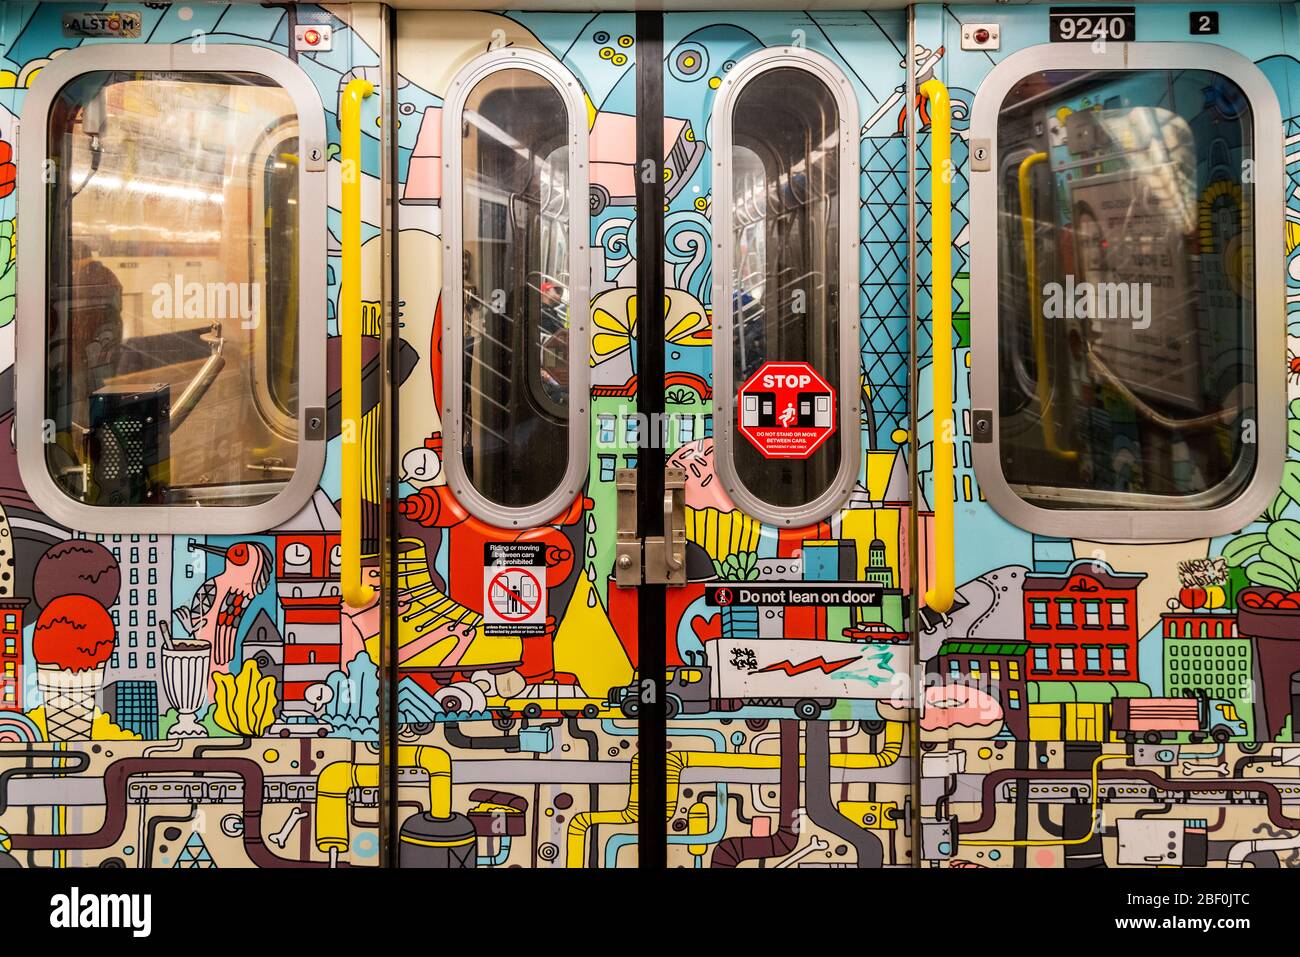 L'intérieur d'une rame de métro avec une décoration murale colorée Art, New York, USA Banque D'Images